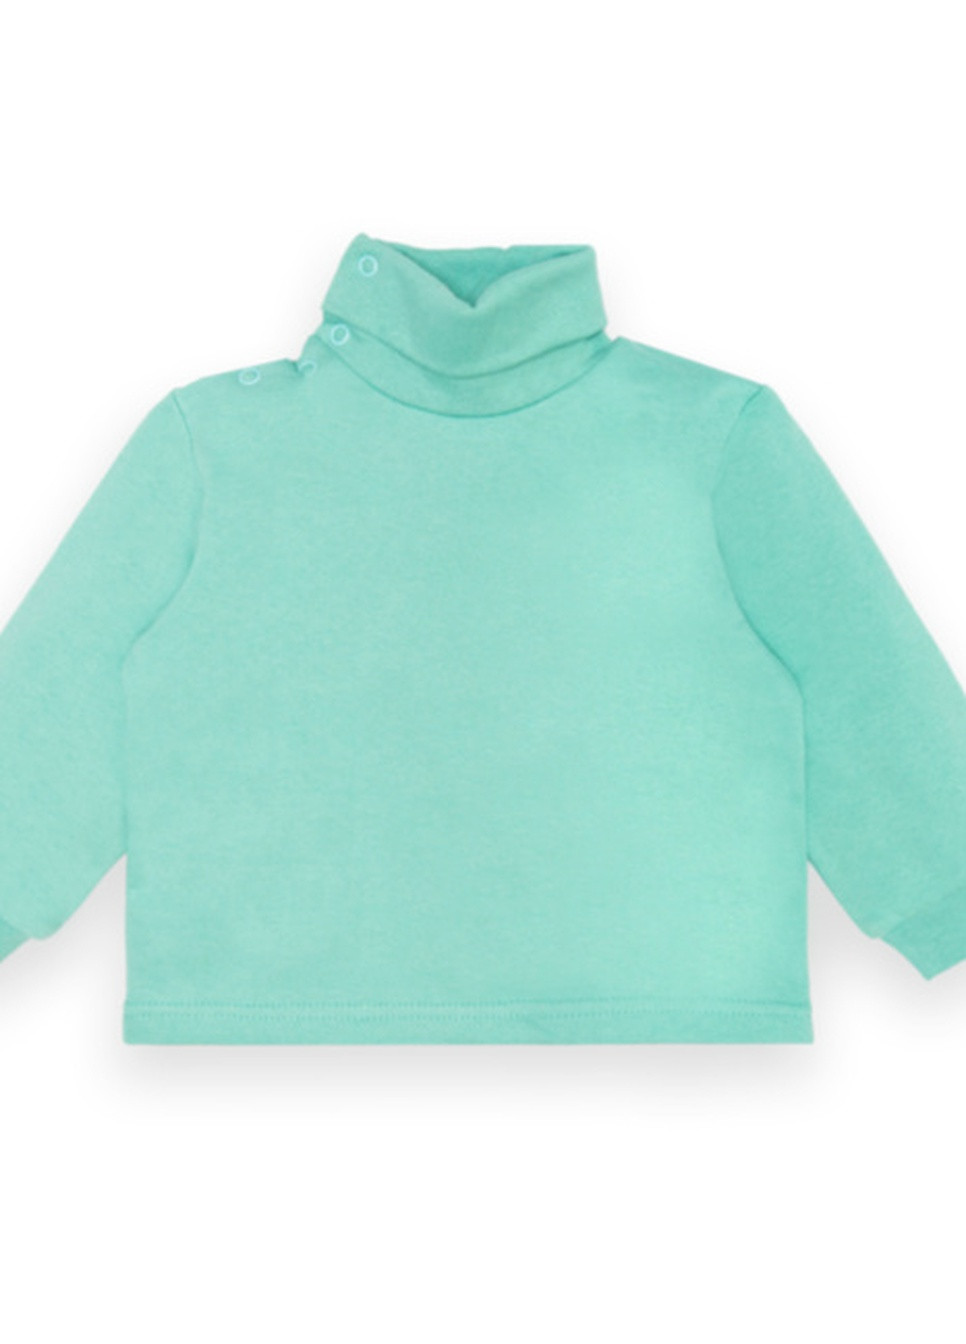 Мятный зимний детский свитер для девочки sv-22-3-3 *mini* Габби